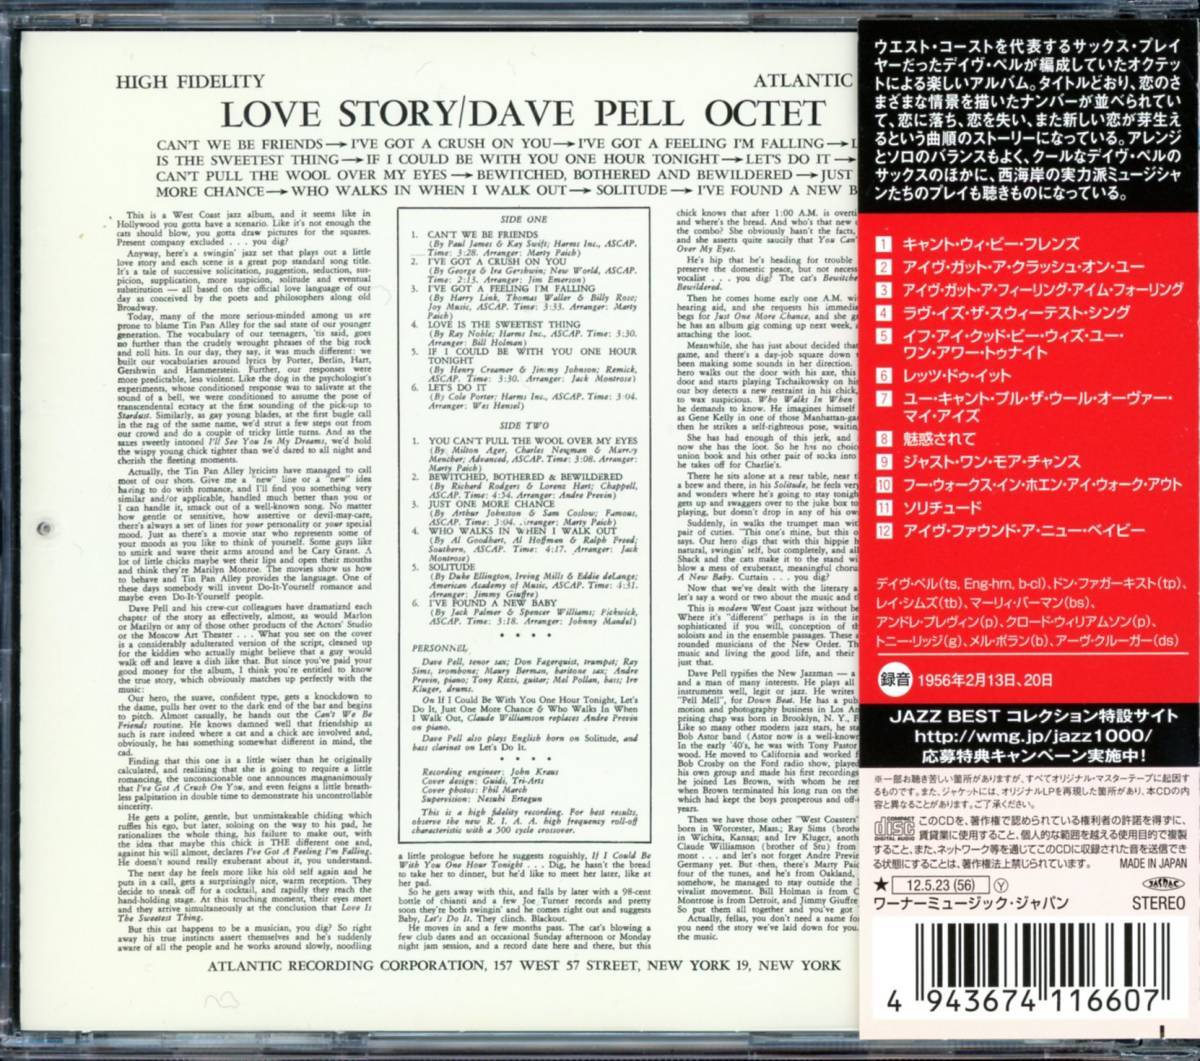 ジャズ■Dave Pell Octet / Love Story (2012) 廃盤 世界初(唯一の)CD化盤!! 最新デジタル・リマスタリング仕様_画像2